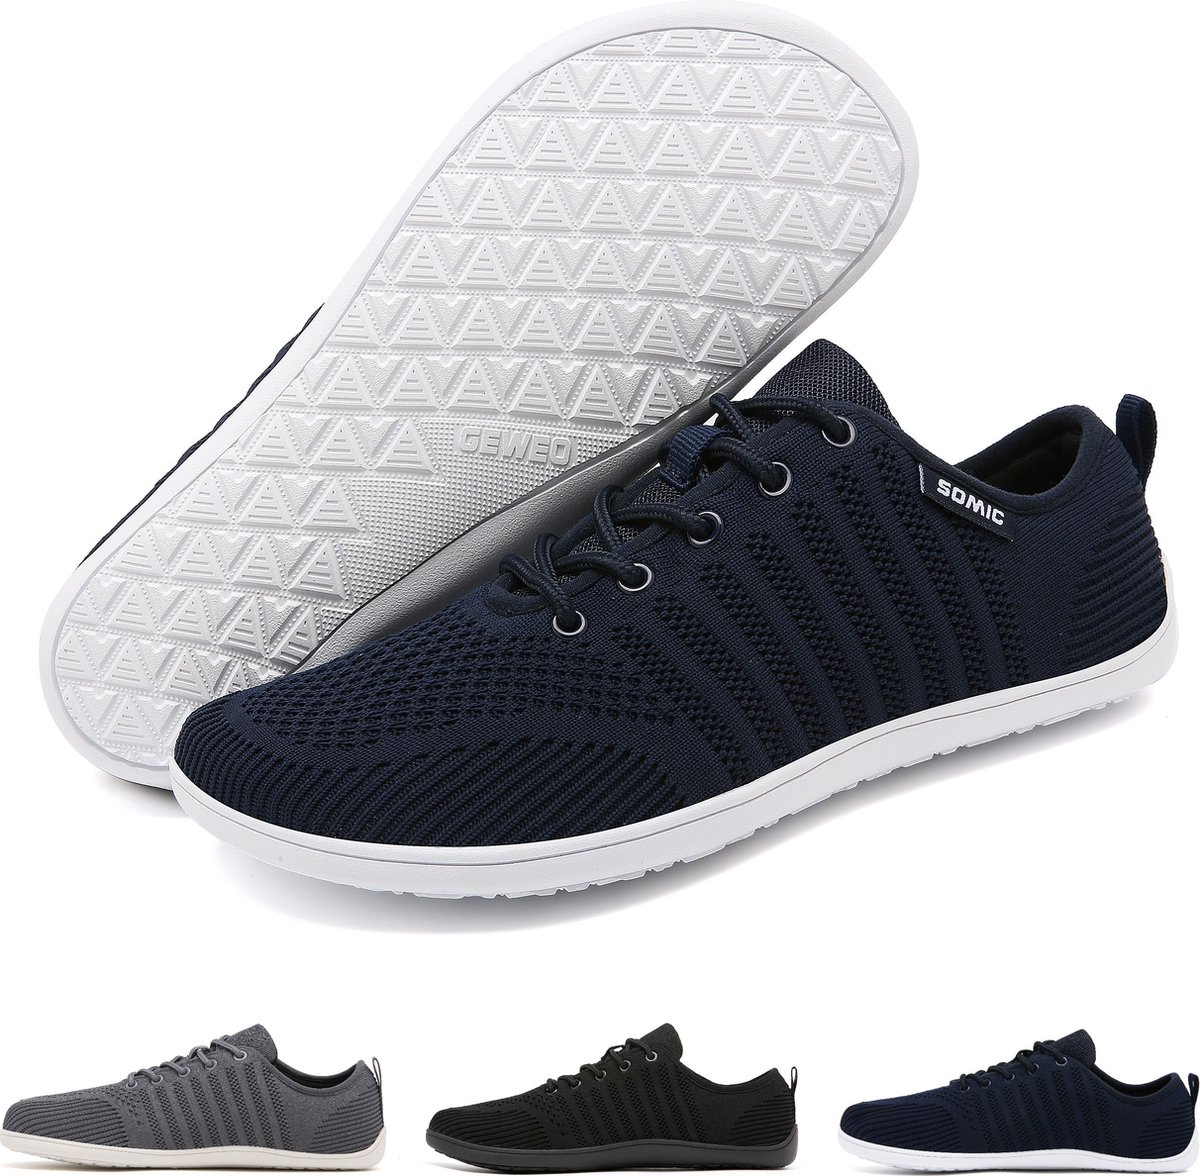 Somic Barefoot Schoenen - Sportschoenen Sneakers - Fitnessschoenen - Hardloopschoenen - Ademend Knit Textiel - Platte Zool - Blauw - Maat 45